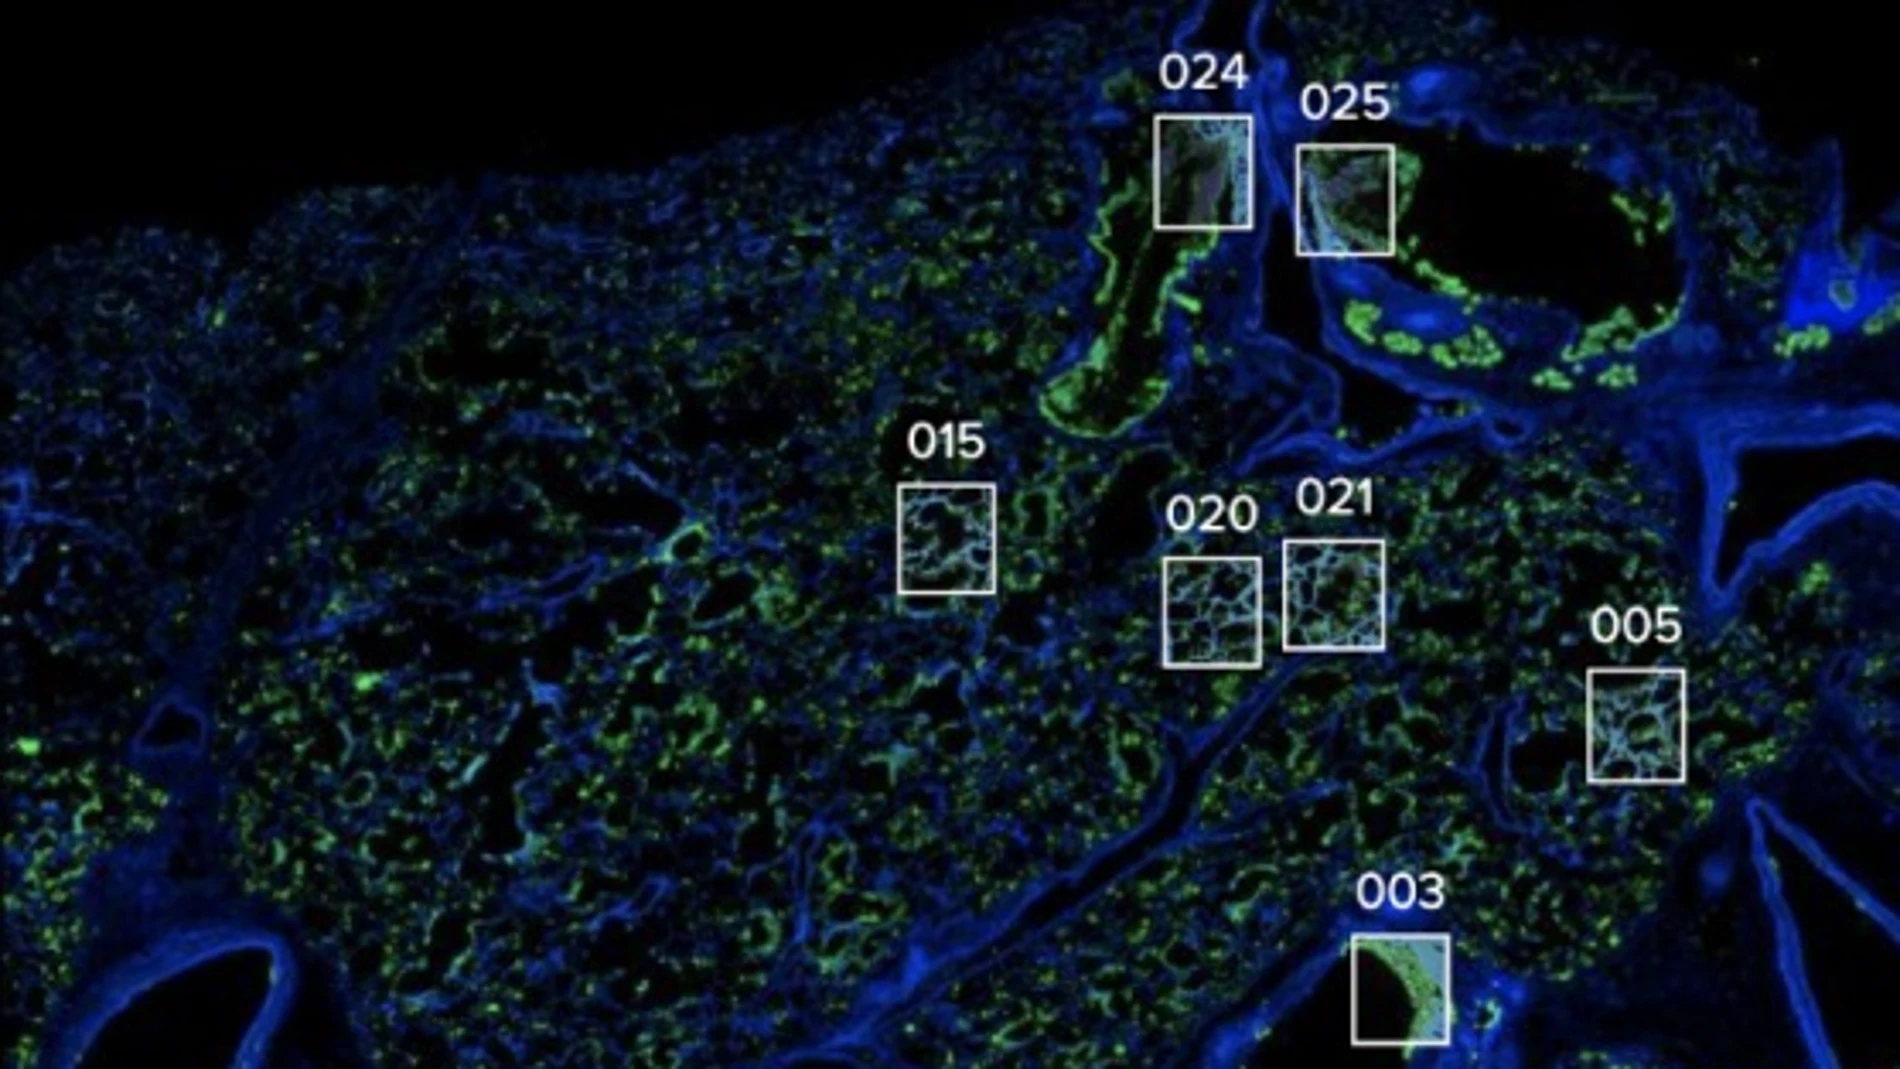 Los investigadores analizaron el tejido pulmonar de pacientes fallecidos de COVID-19 y se centraron en regiones y estructuras clave de interés